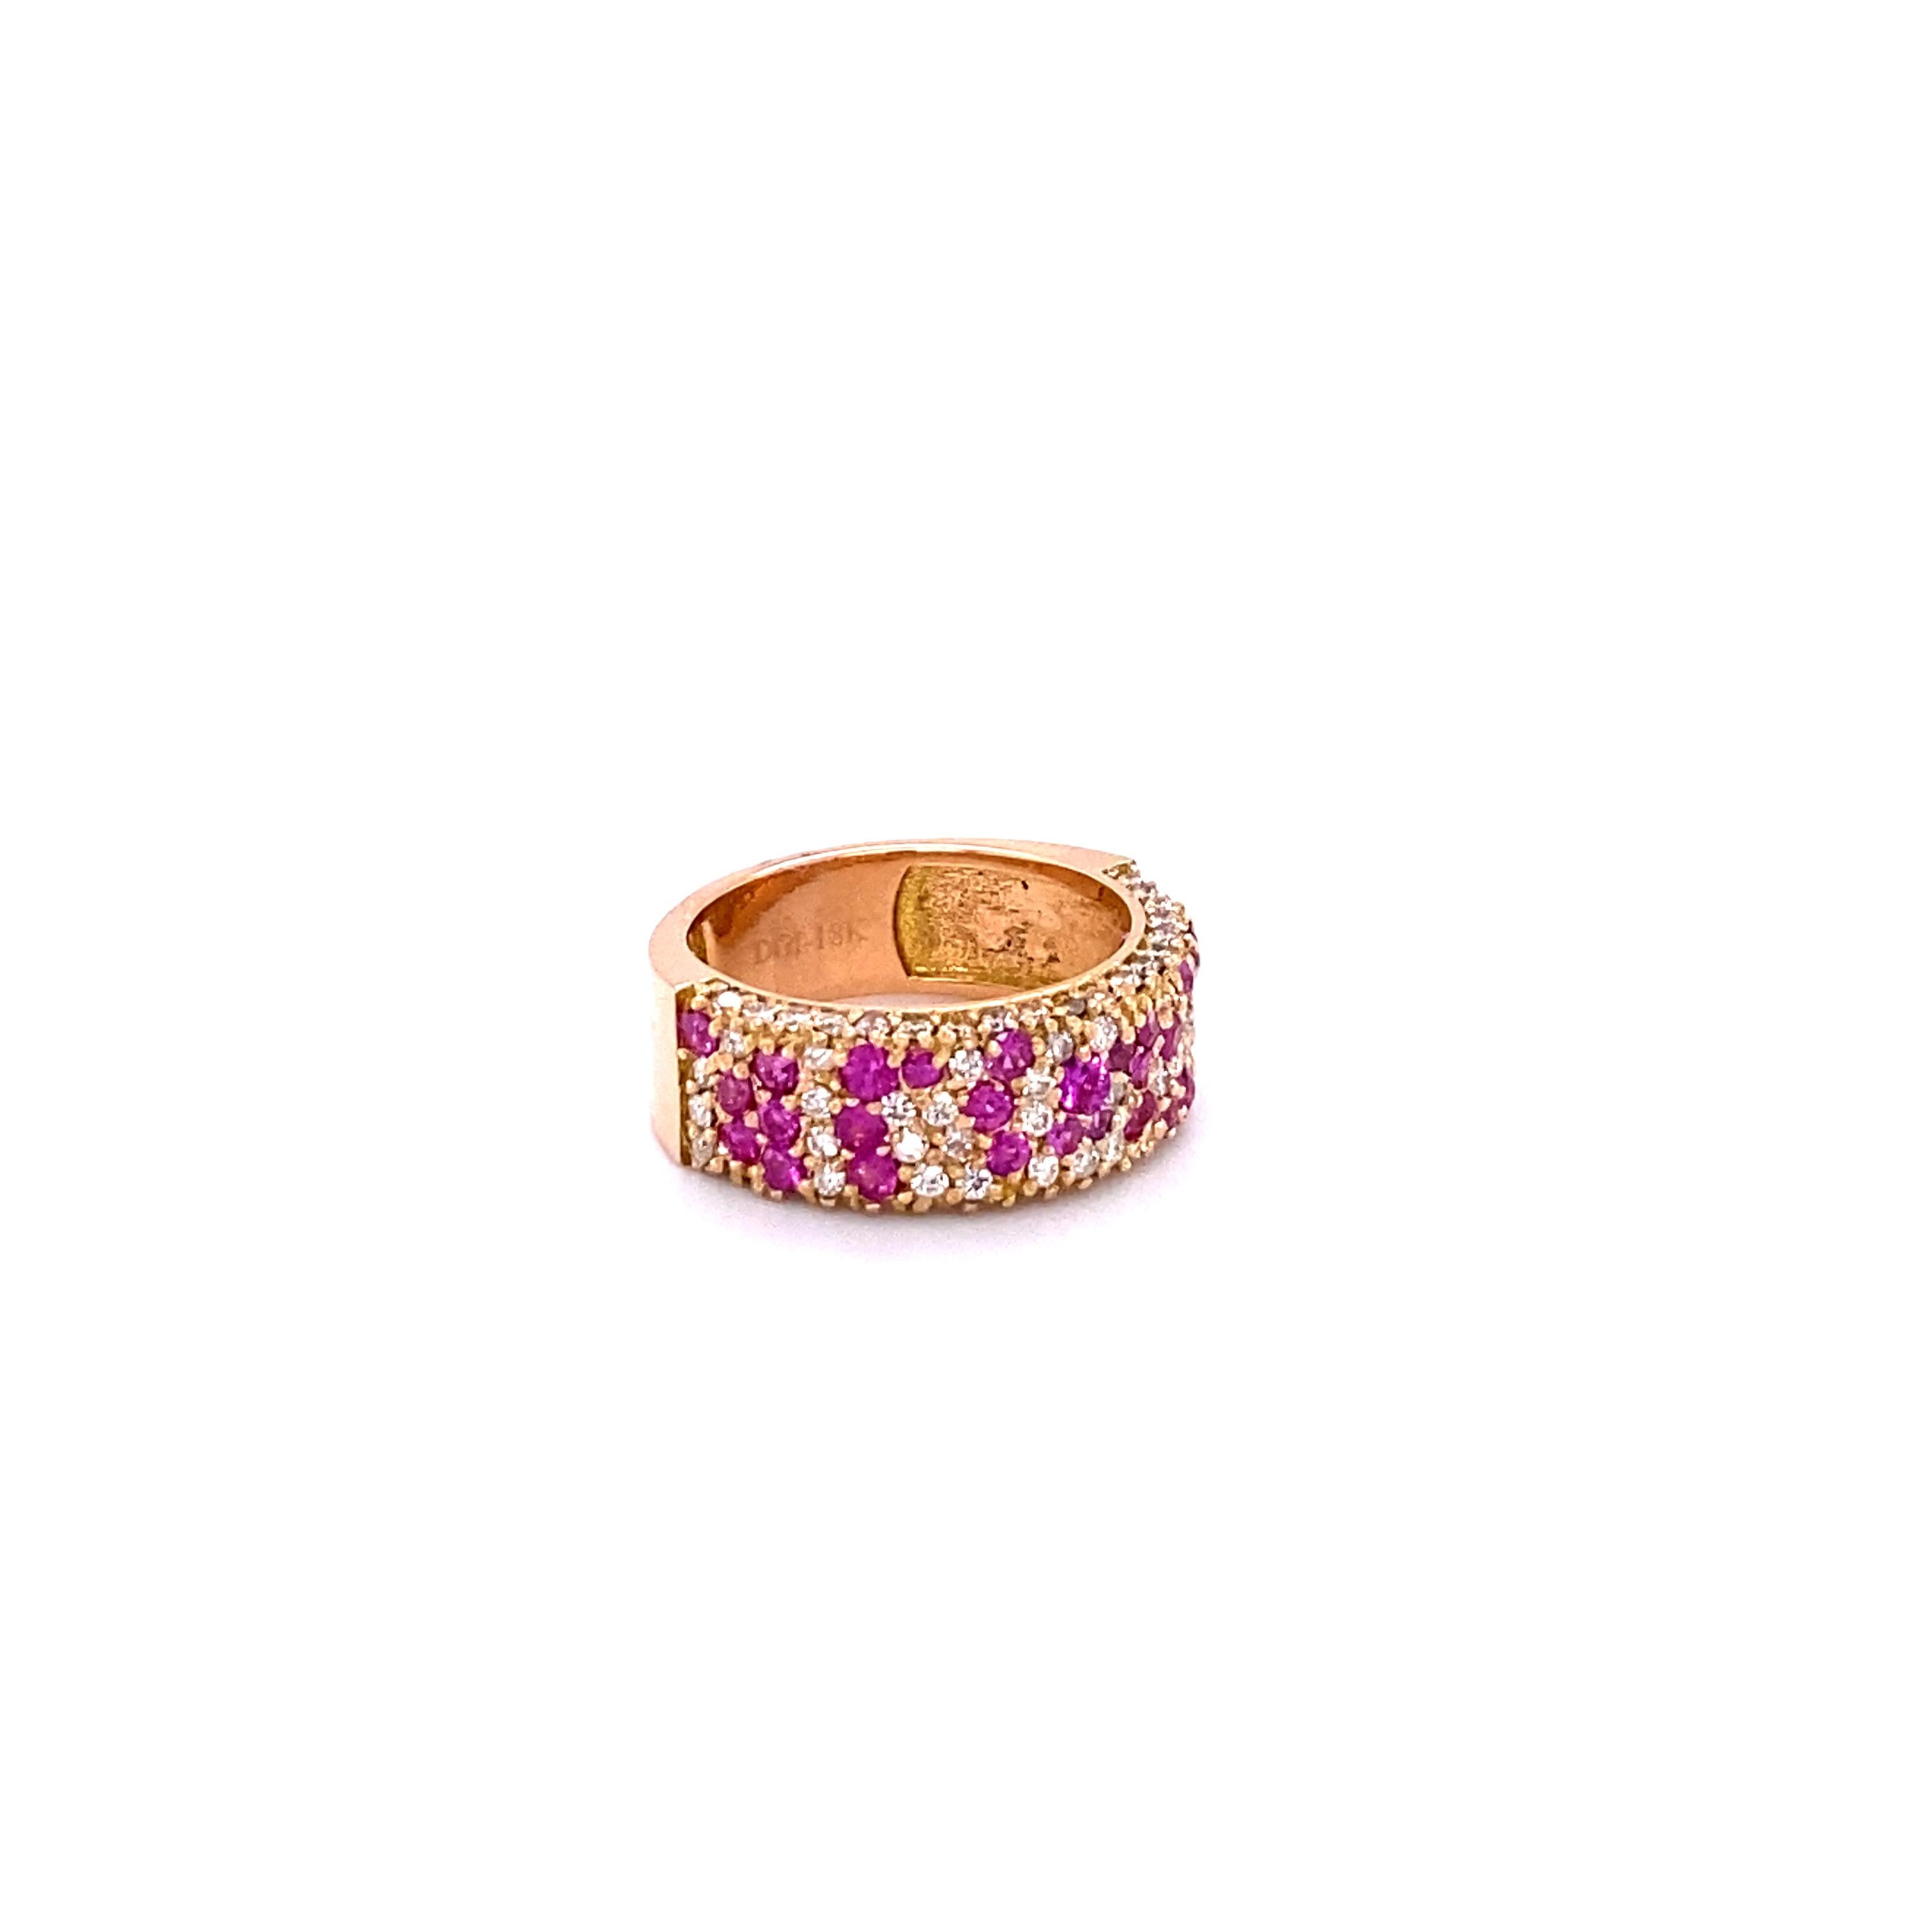 Ring aus 18 Karat Roségold mit 2,10 Karat Saphir und Diamant

Dieses einzigartige Band besteht aus einem Cluster von 35 rosa Saphiren mit einem Gewicht von 1,23 Karat und 75 Diamanten im Rundschliff mit einem Gewicht von 0,87 Karat.  Die Diamanten